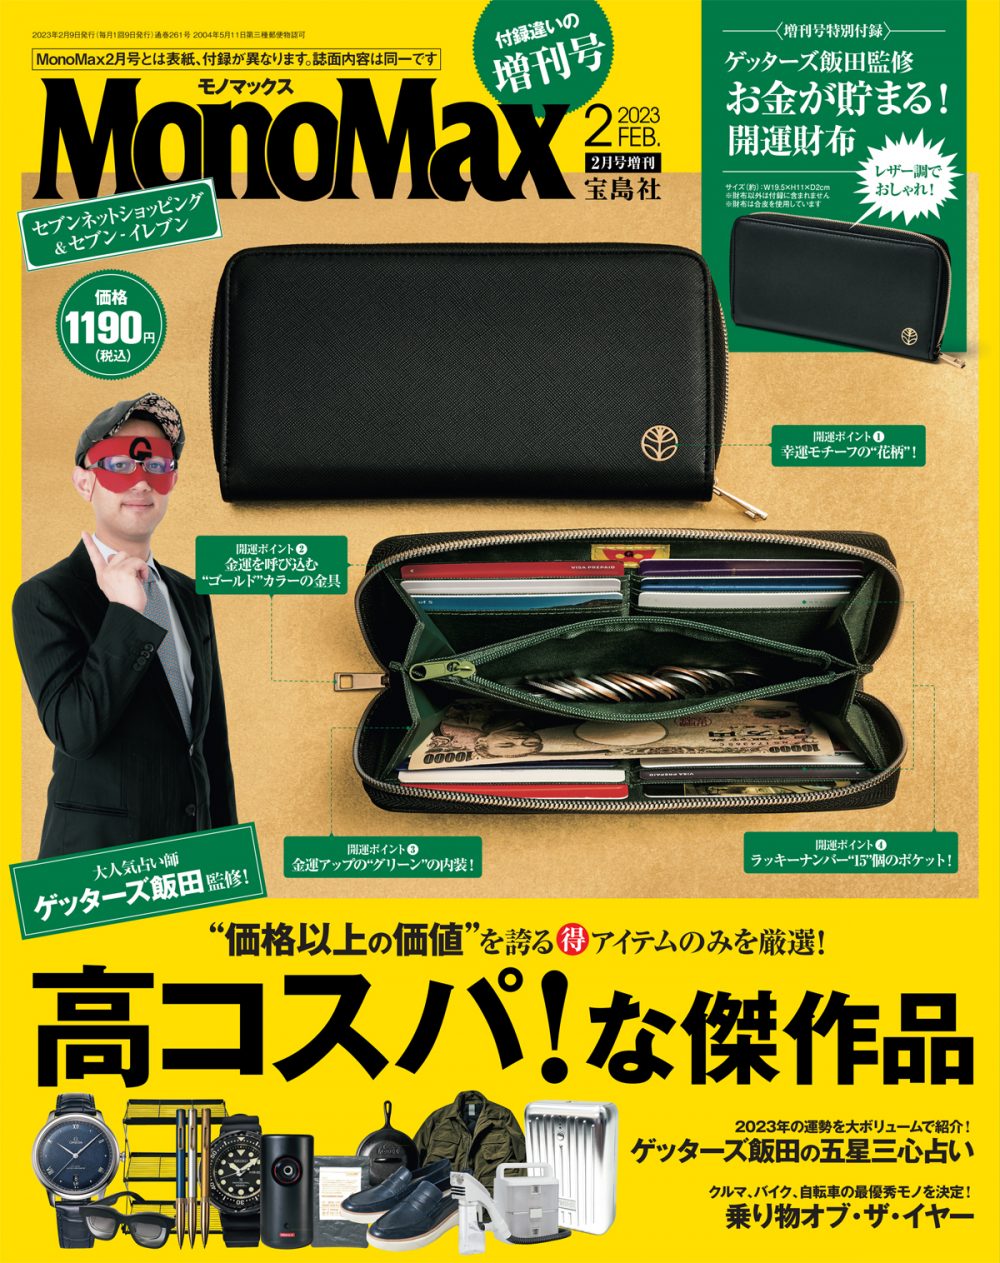 MonoMax モノマックス 9月号付録 マッキントッシュフィロソフィー 財布